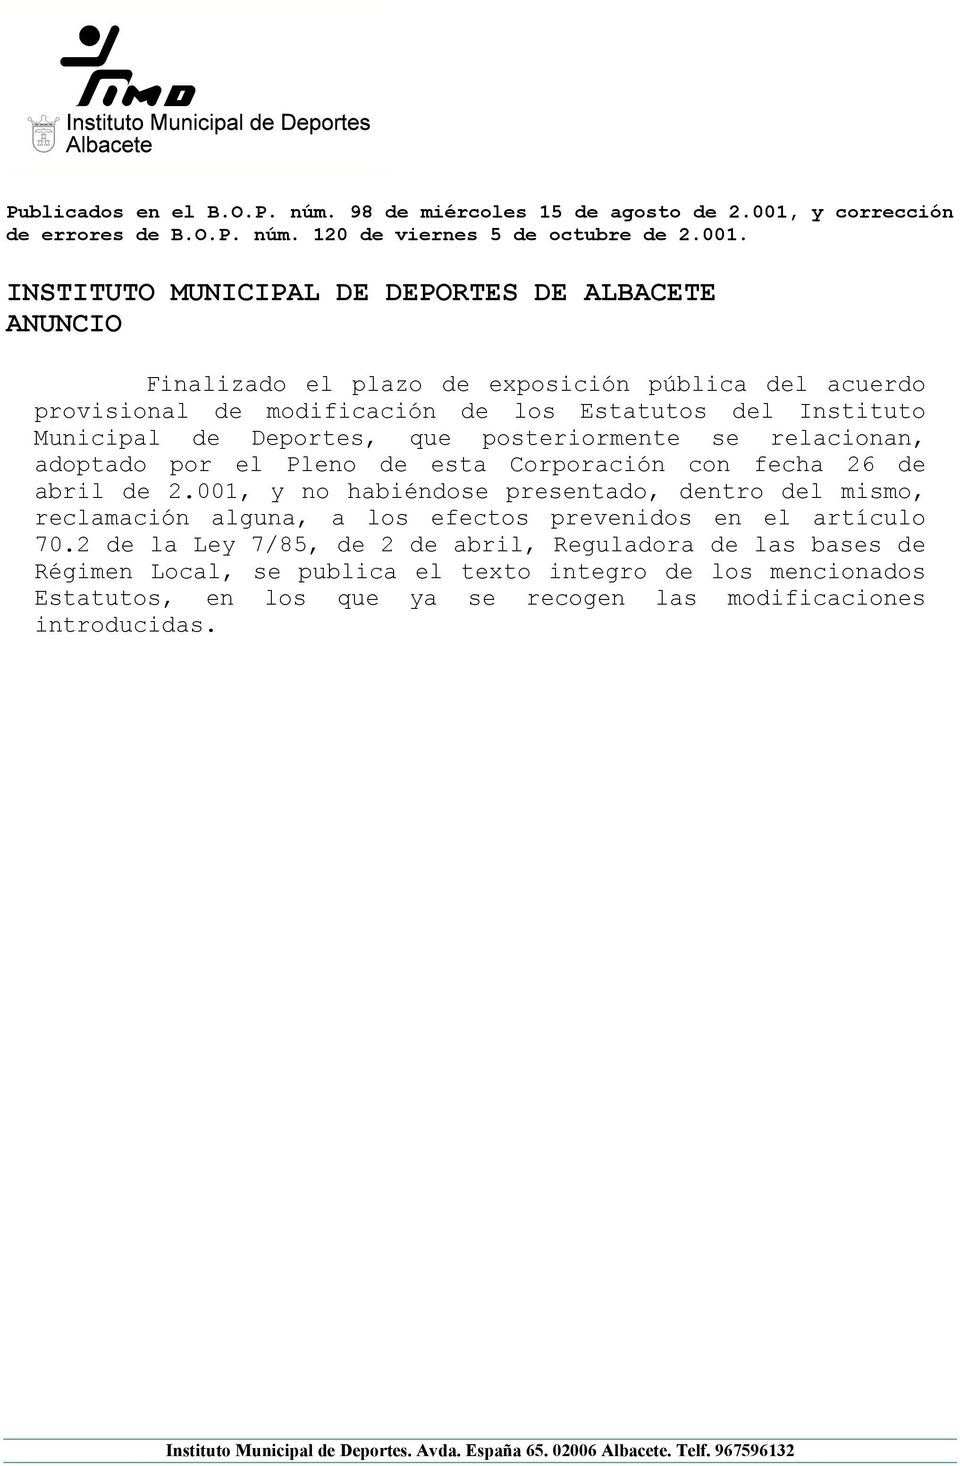 INSTITUTO MUNICIPAL DE DEPORTES DE ALBACETE ANUNCIO Finalizado el plazo de exposición pública del acuerdo provisional de modificación de los Estatutos del Instituto Municipal de